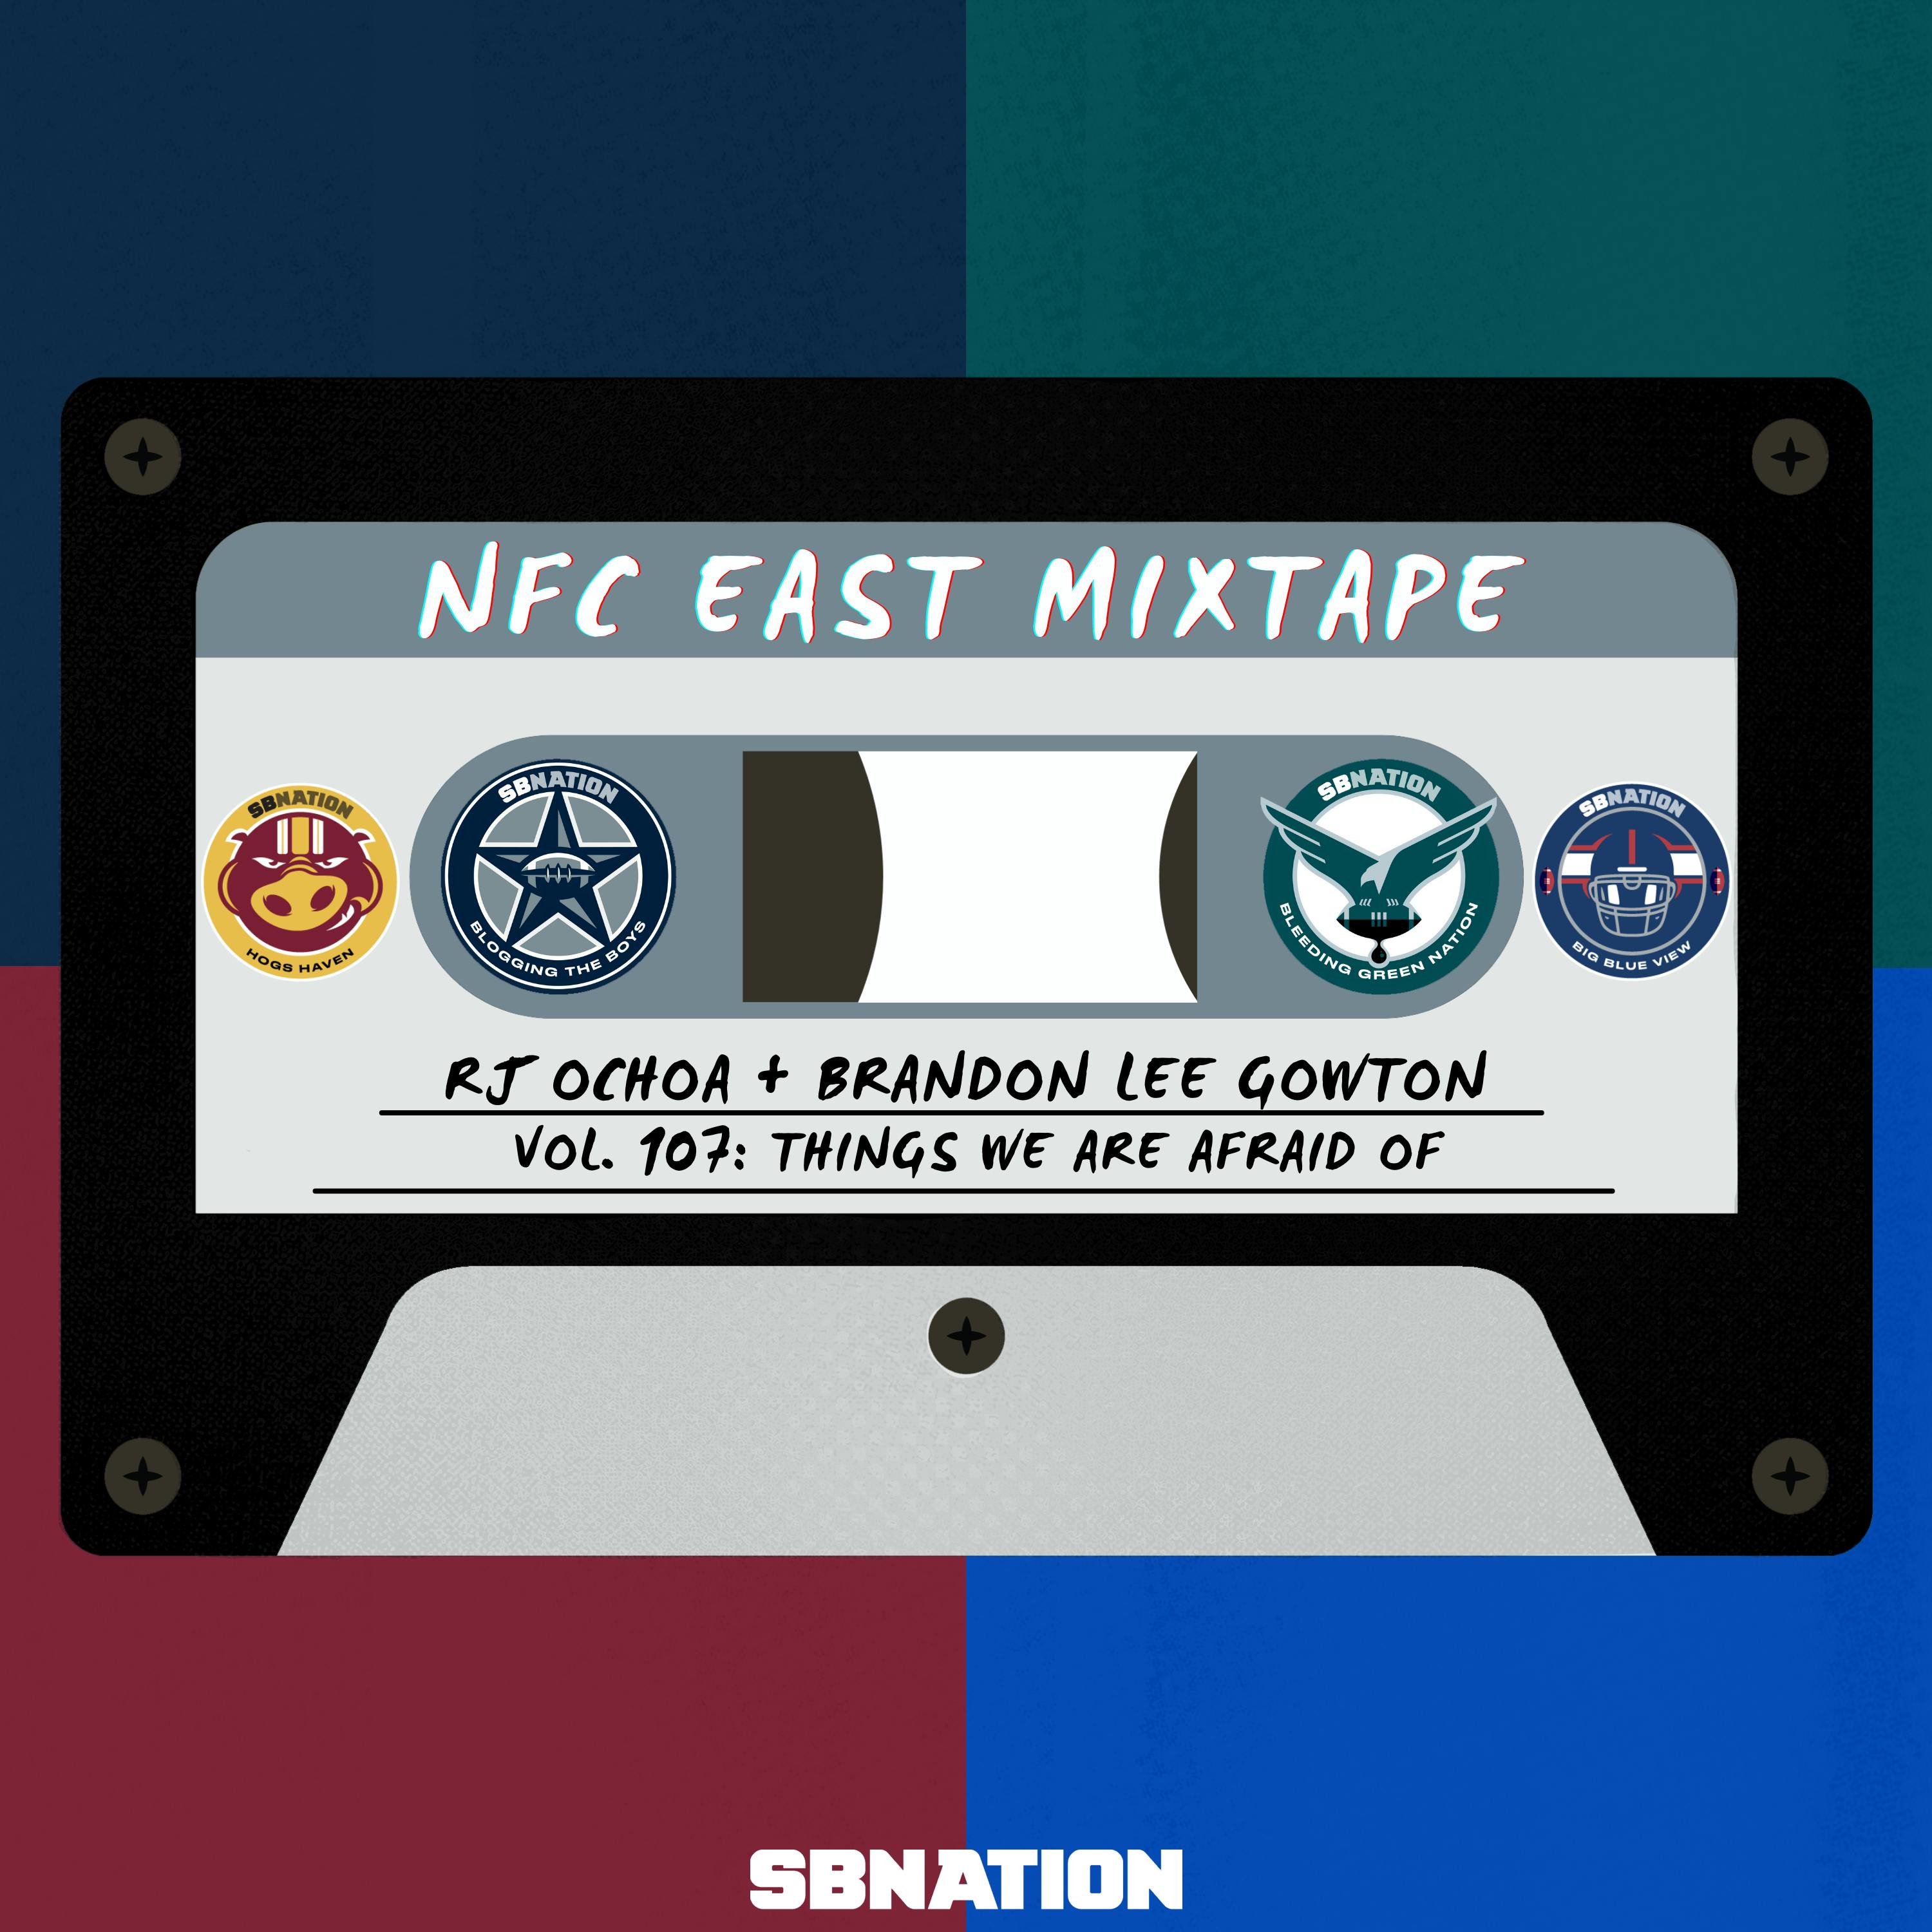 NFC East Mixtape Vol. 107: Things we are afraid of